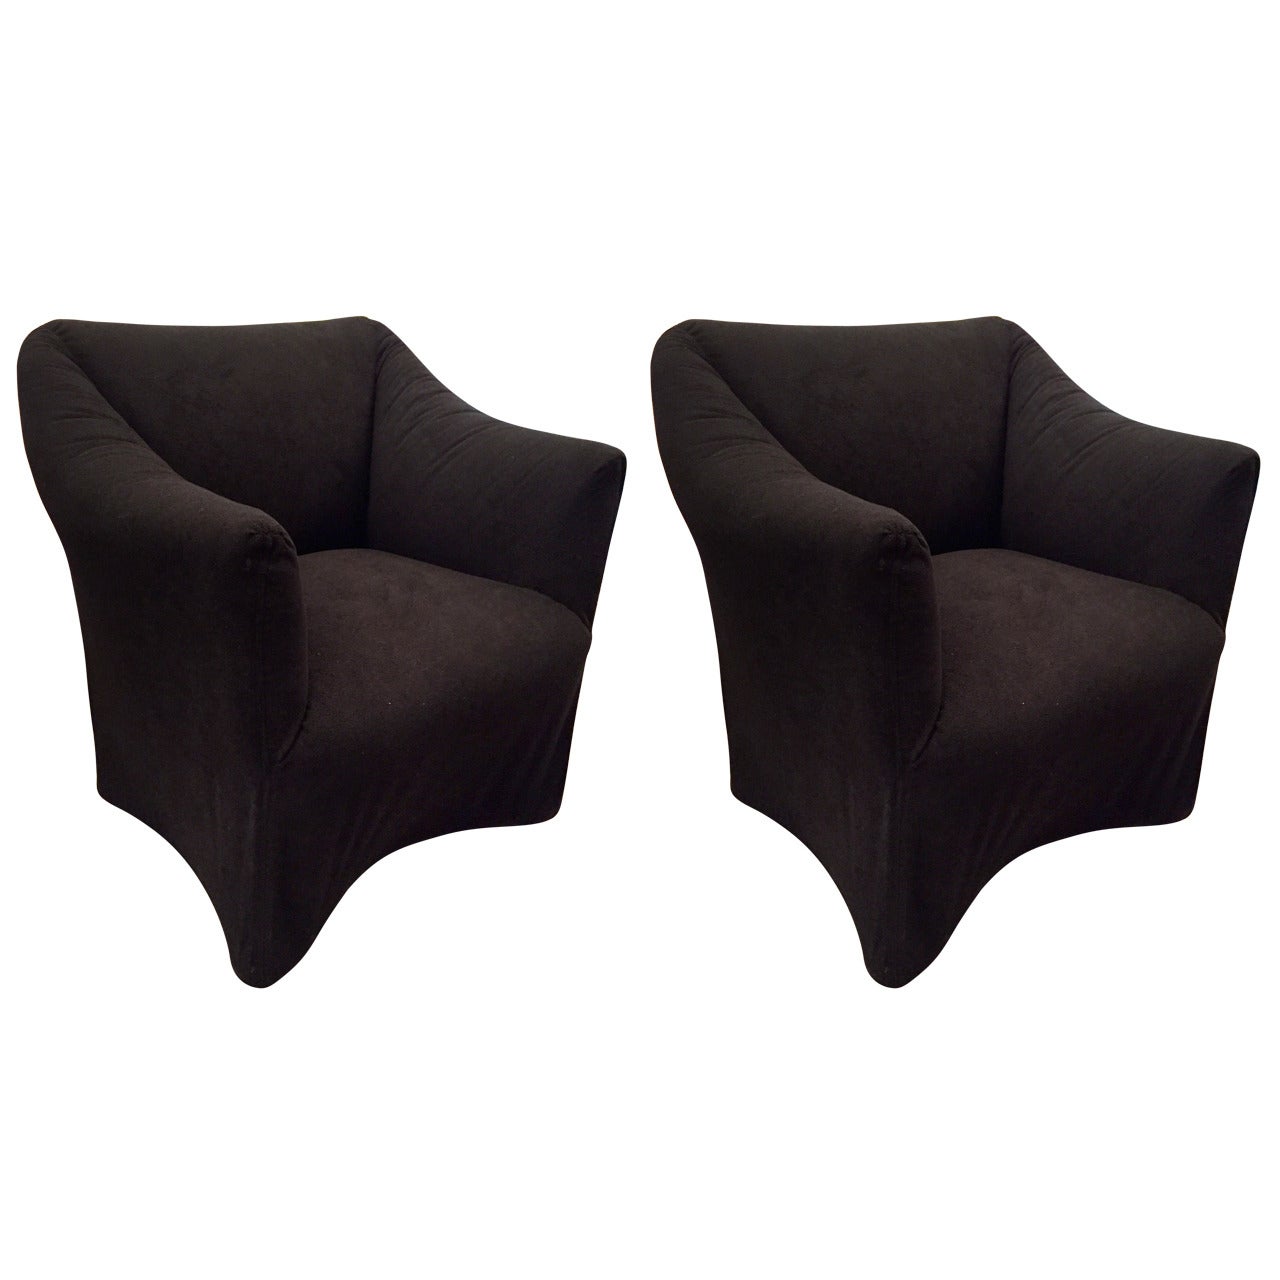 Pair of Mario Bellini "Tentazione" Chairs